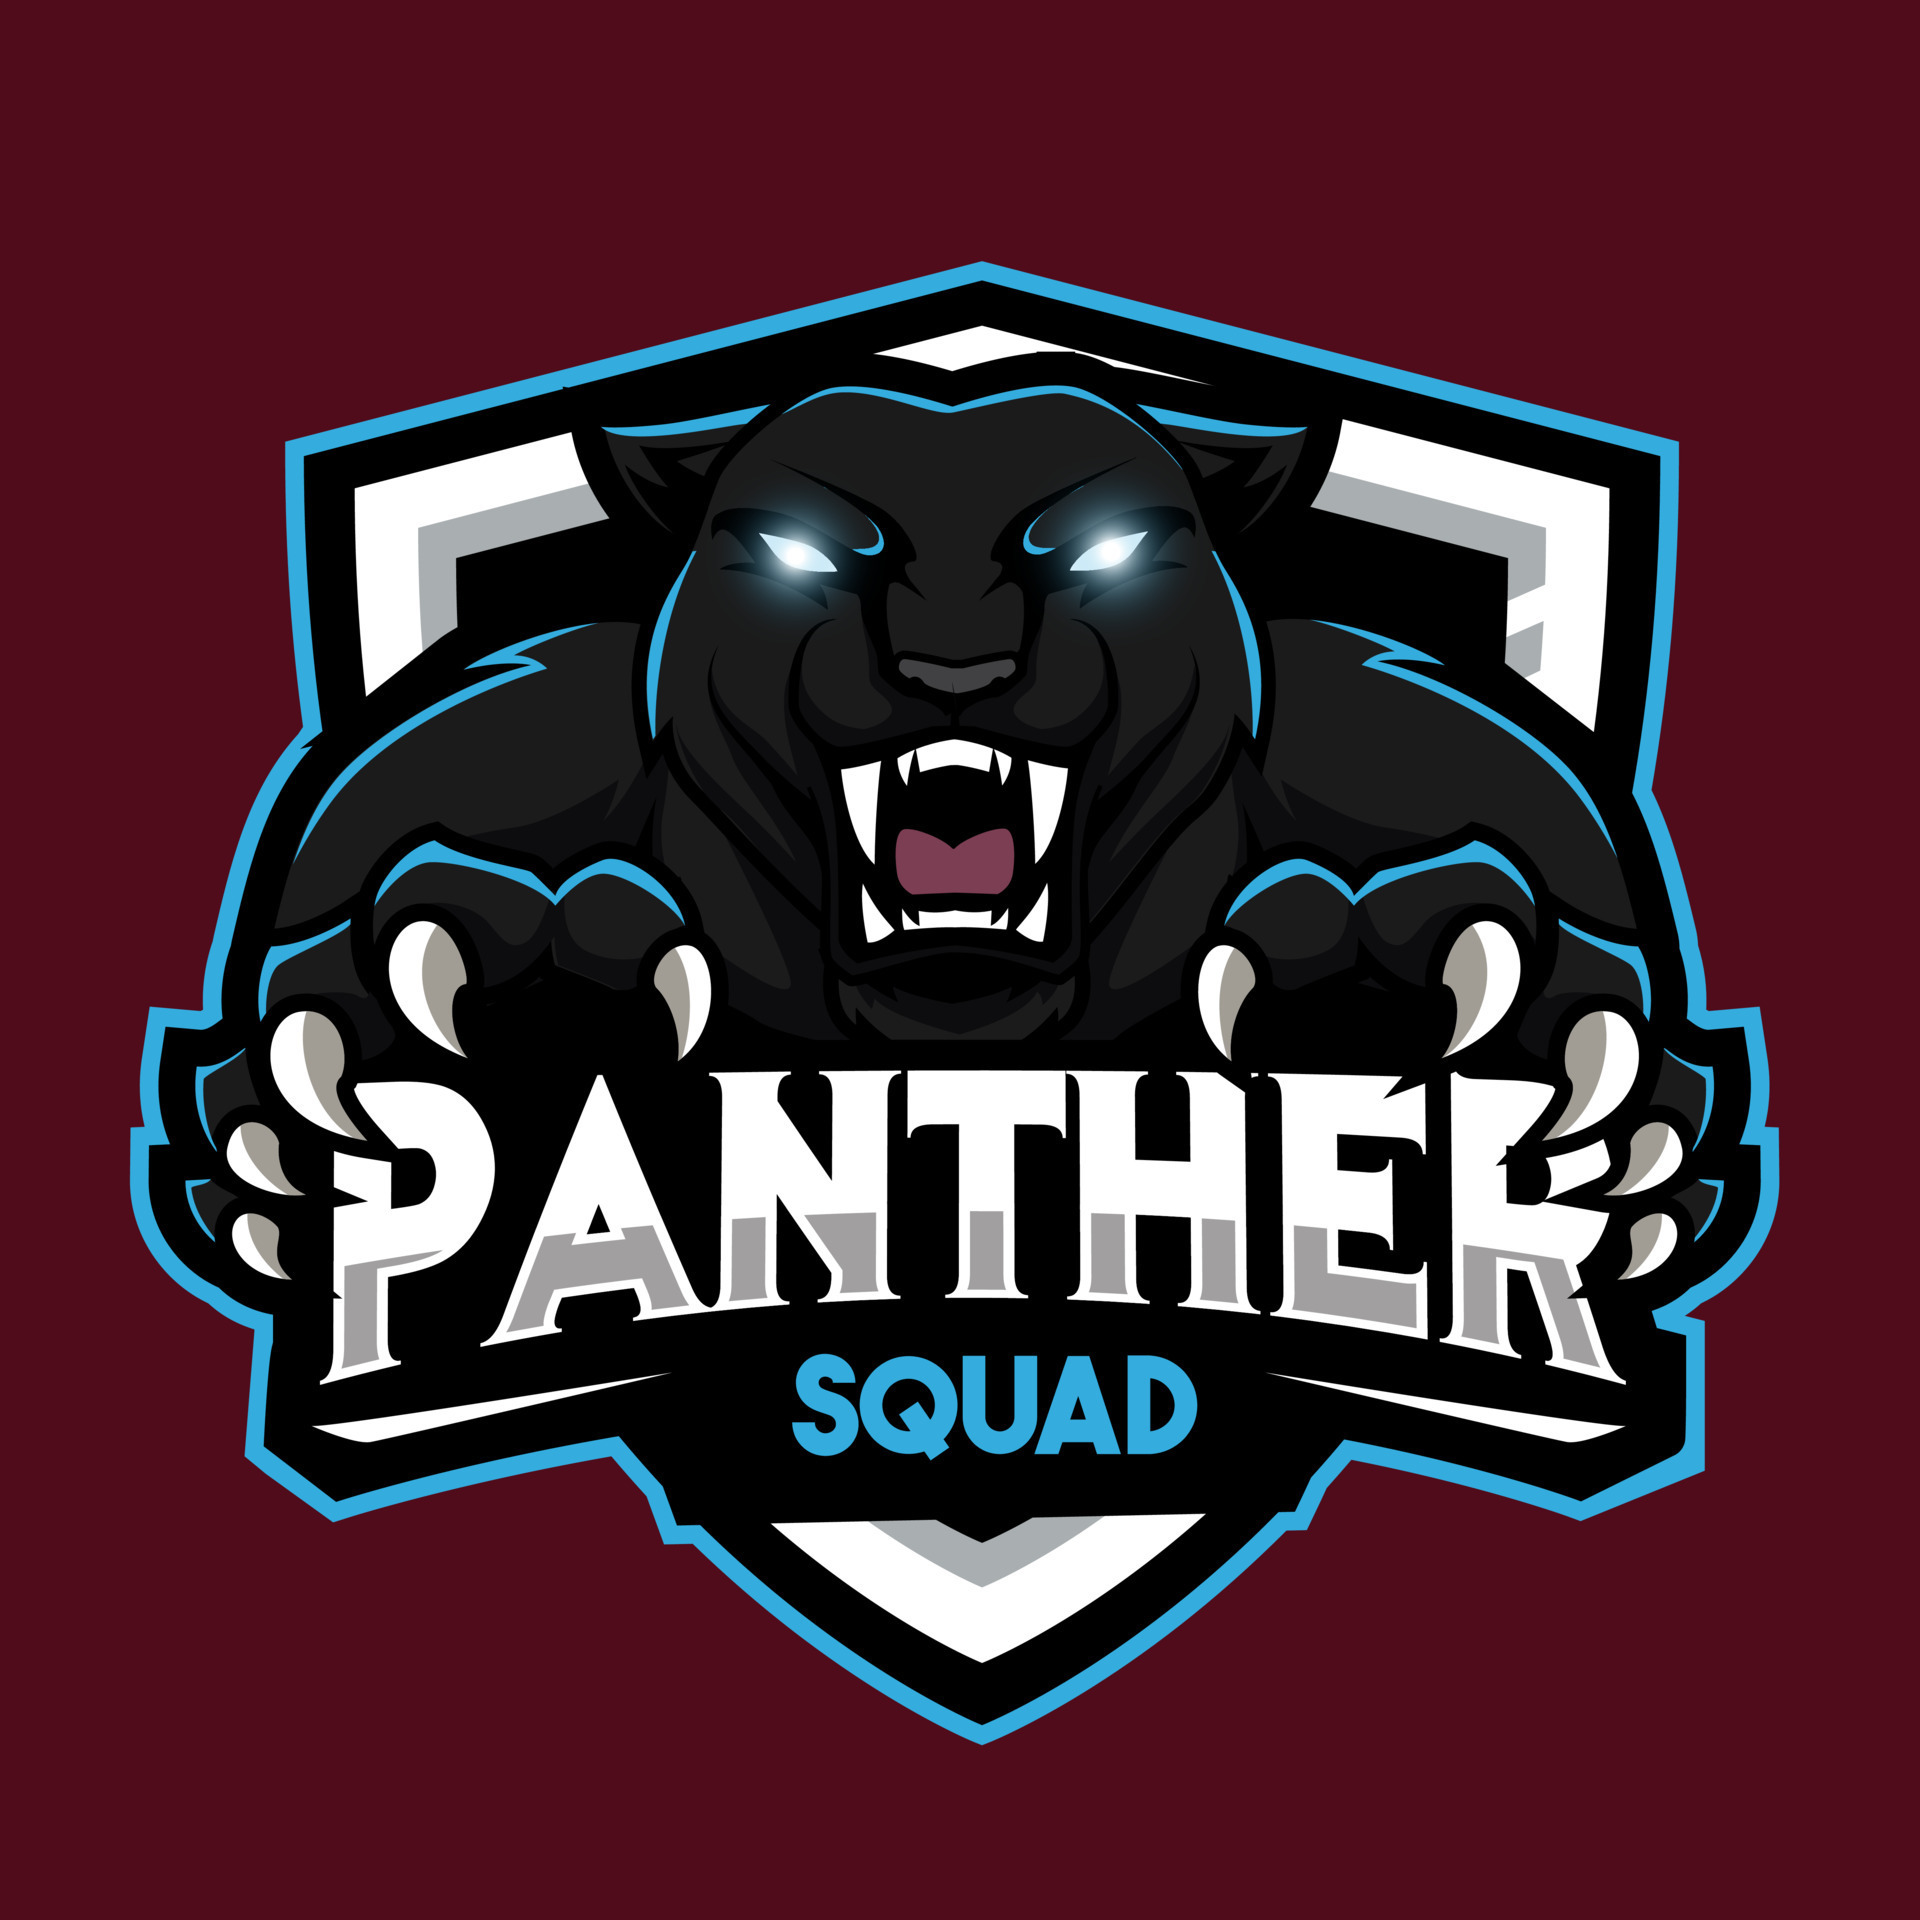 Panther Mascot Logo Gaming Vector Illustration 12389013 Vector Art At